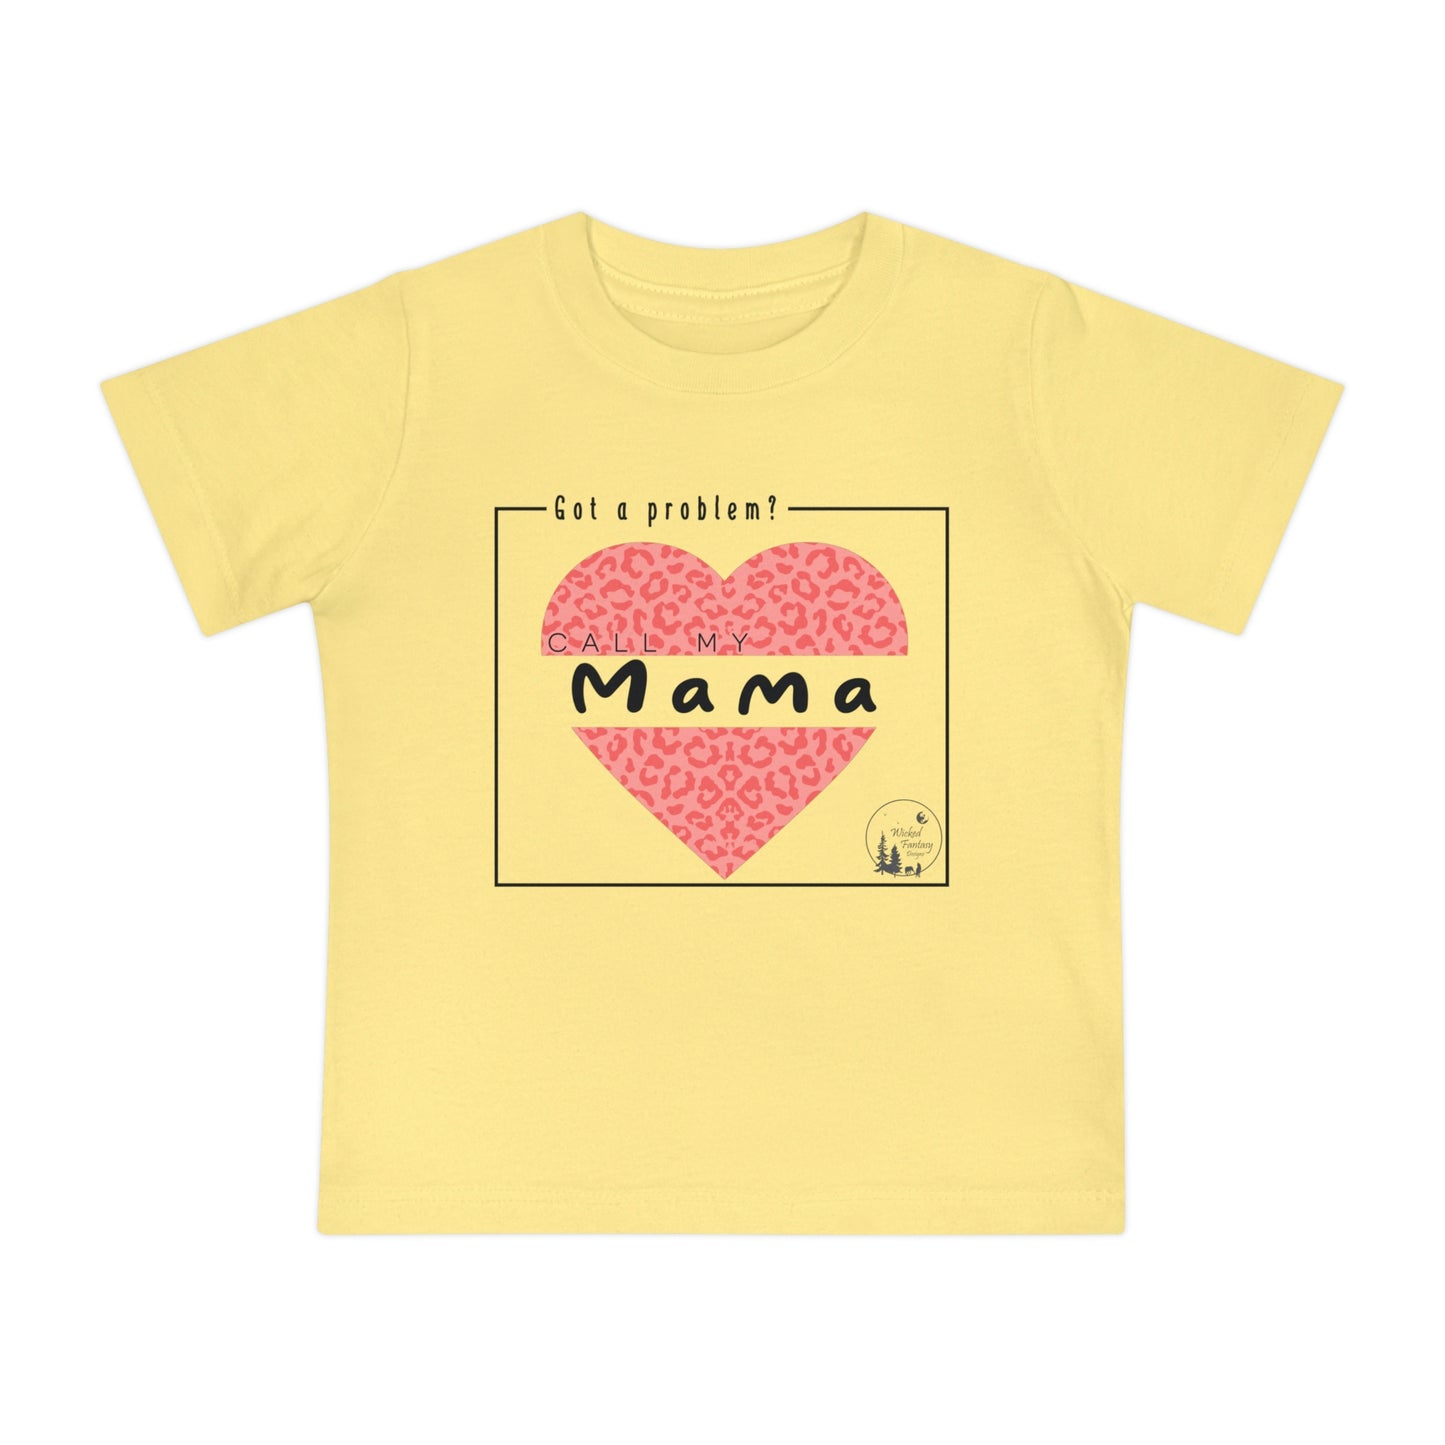 Got a Problem Call My Mama Leopard Print Heart Baby Short Sleeve T-Shirt